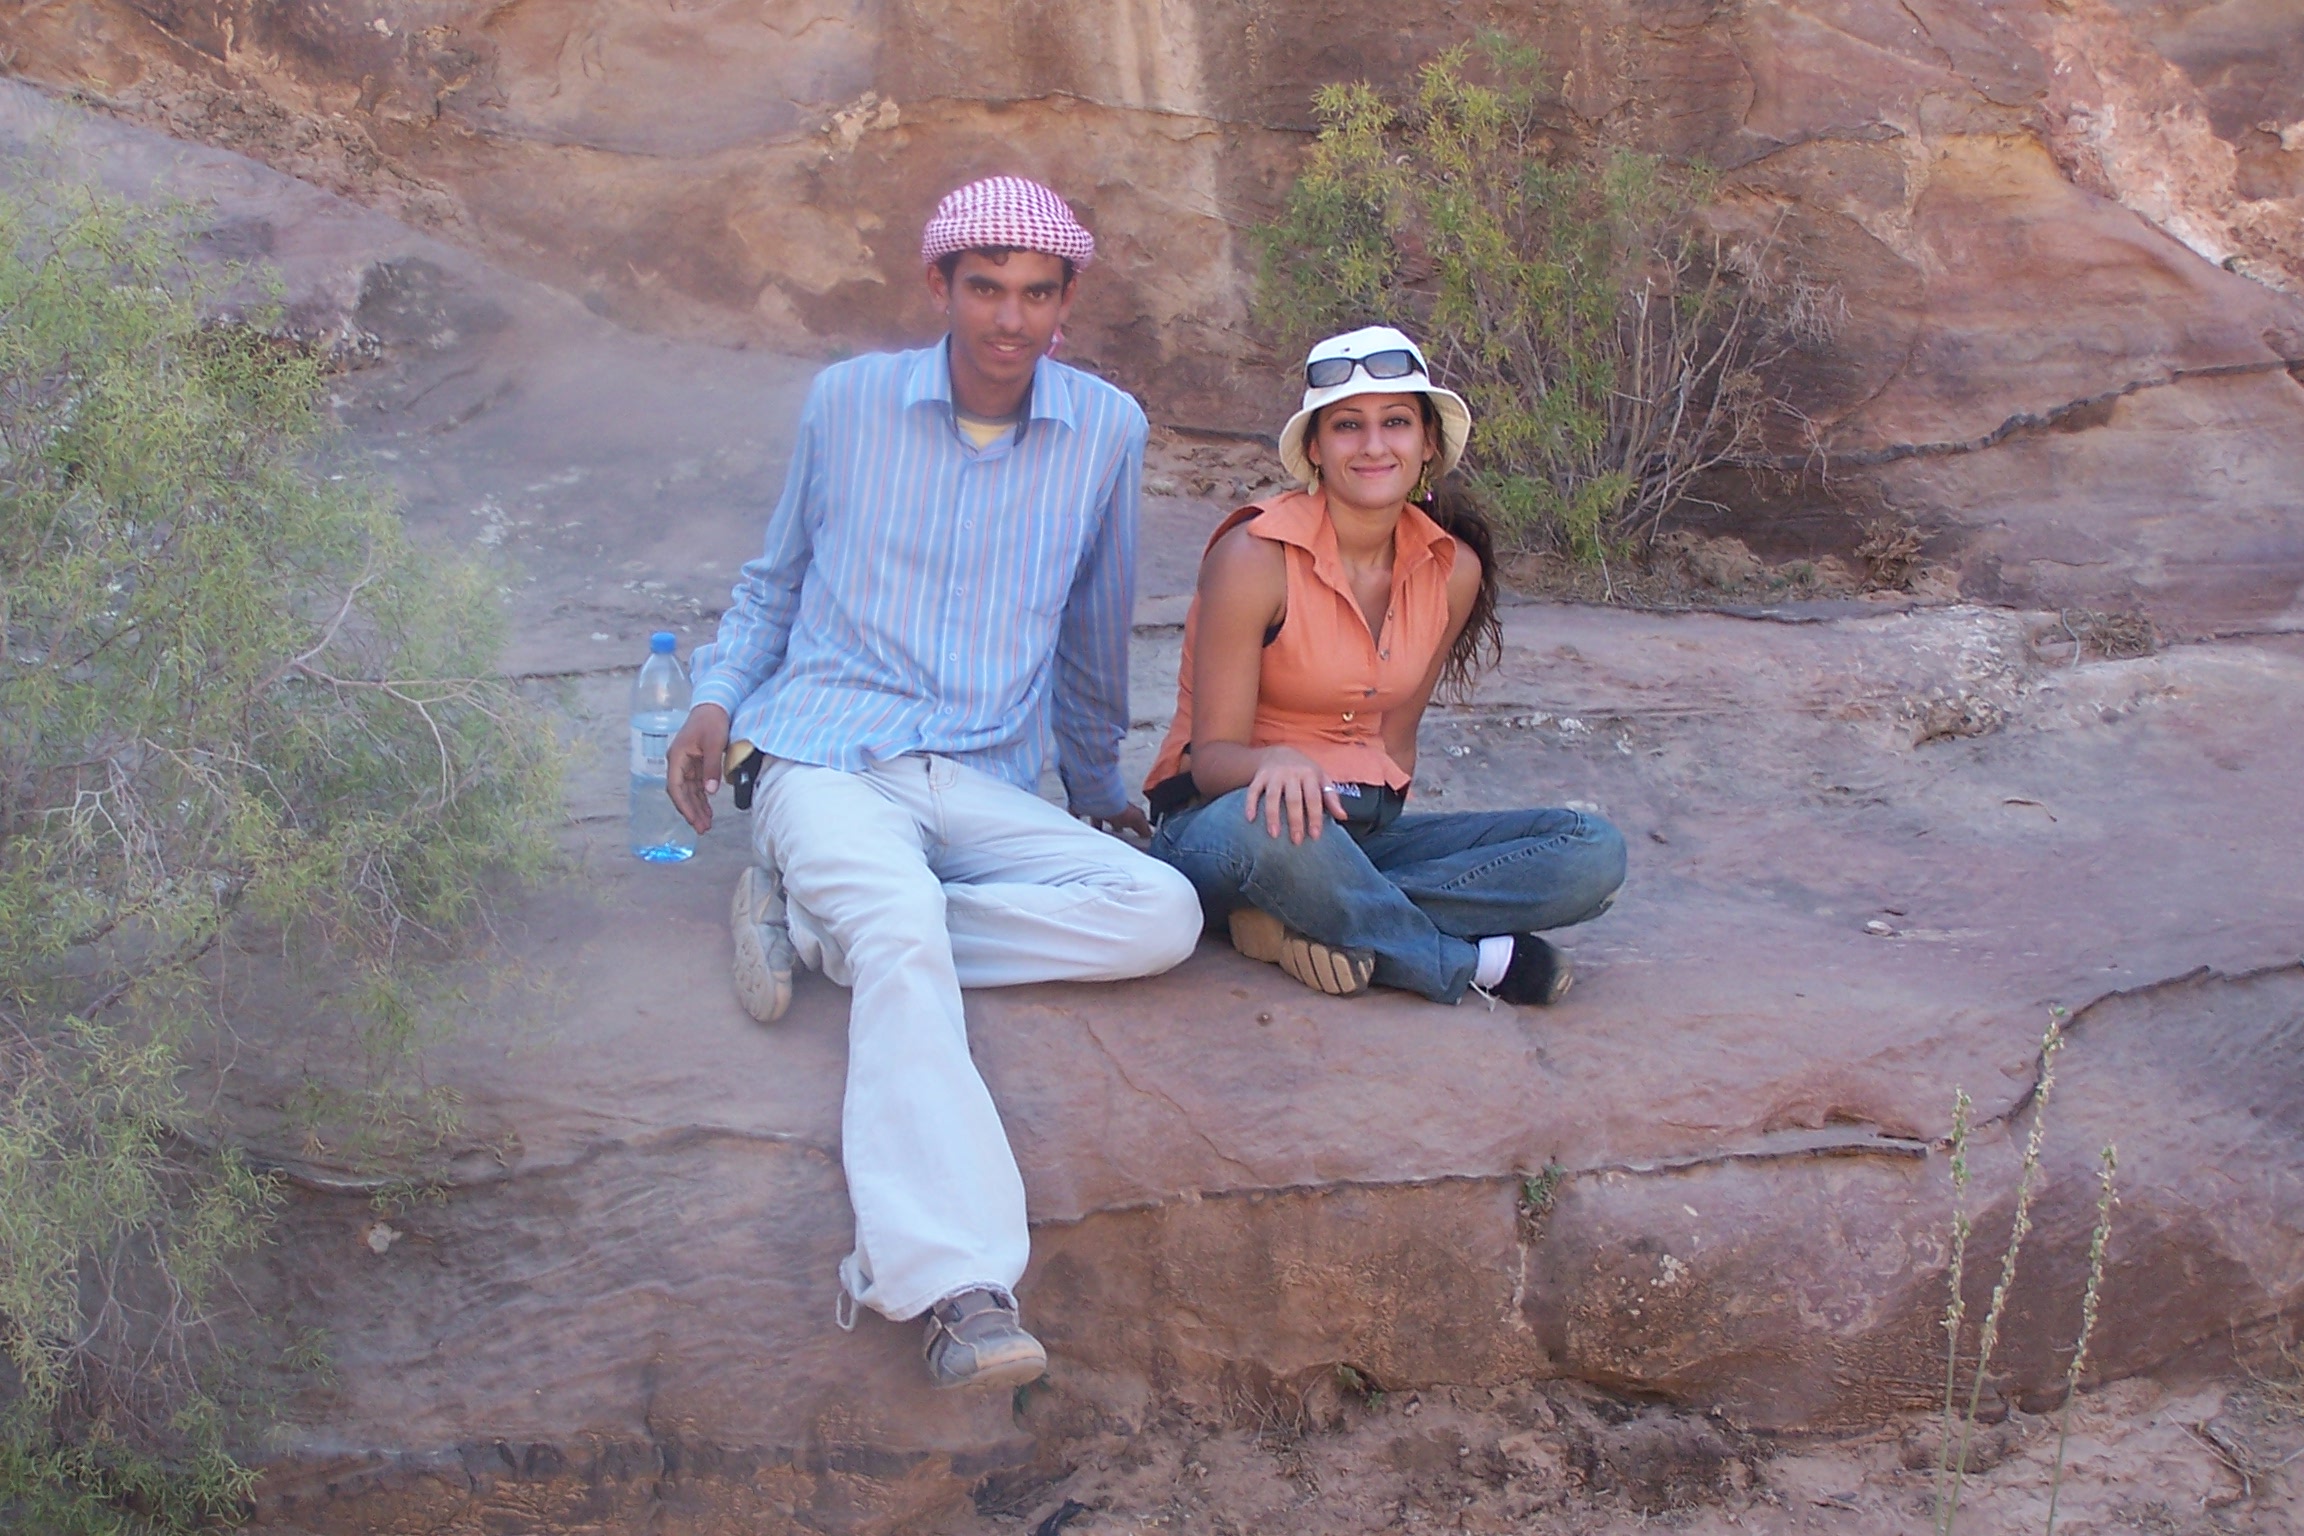 Rita and our guide in Jordan 2005